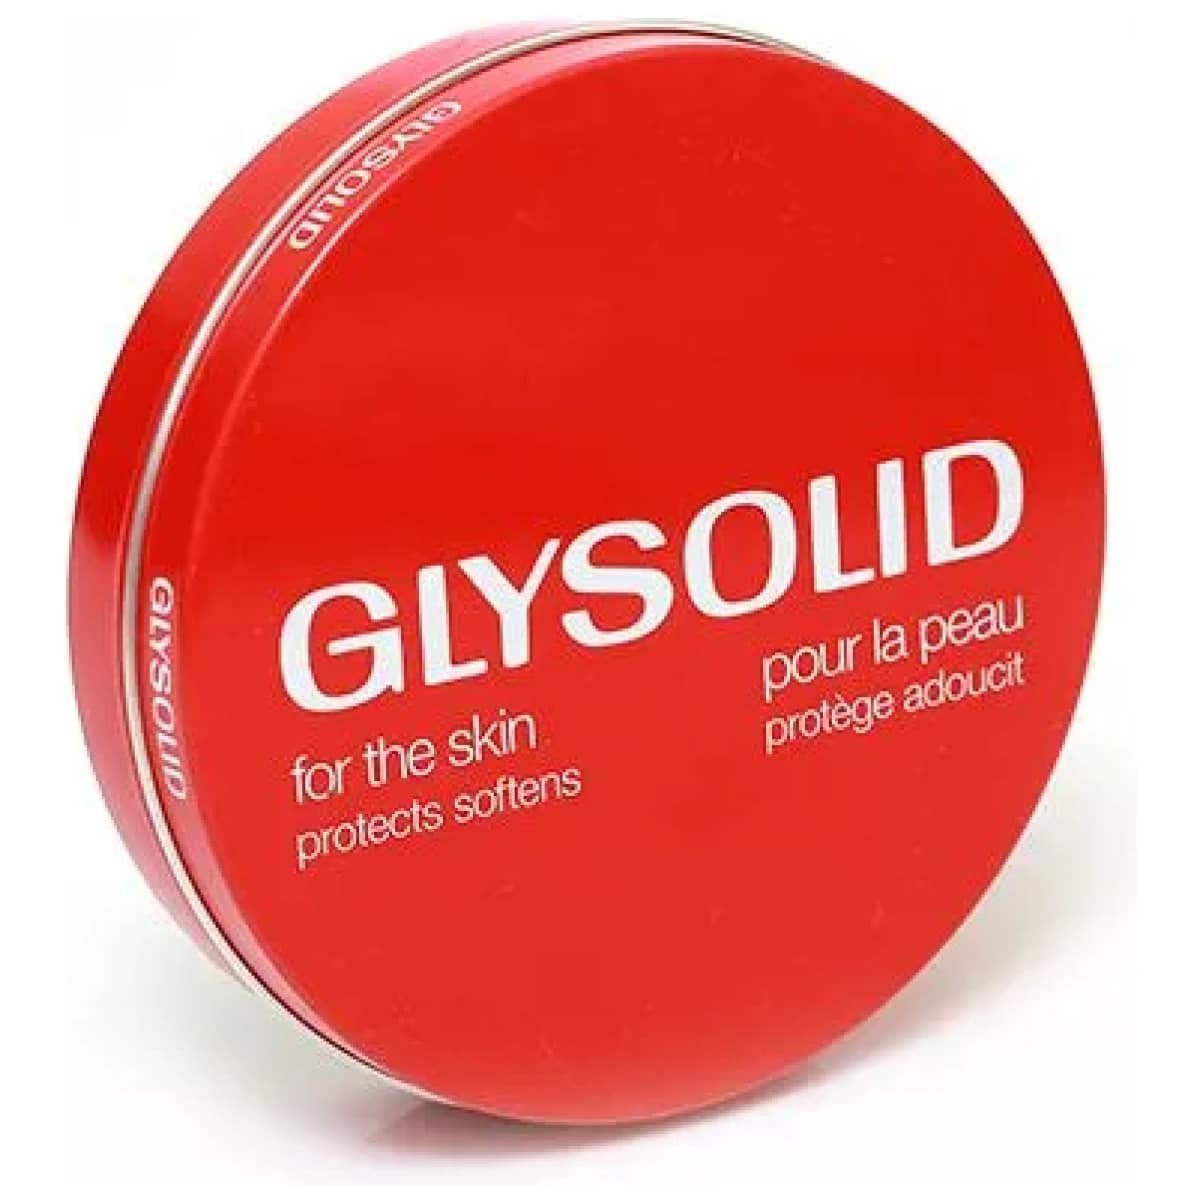 GLYSOLID Glycerin Skin Cream 125 ml